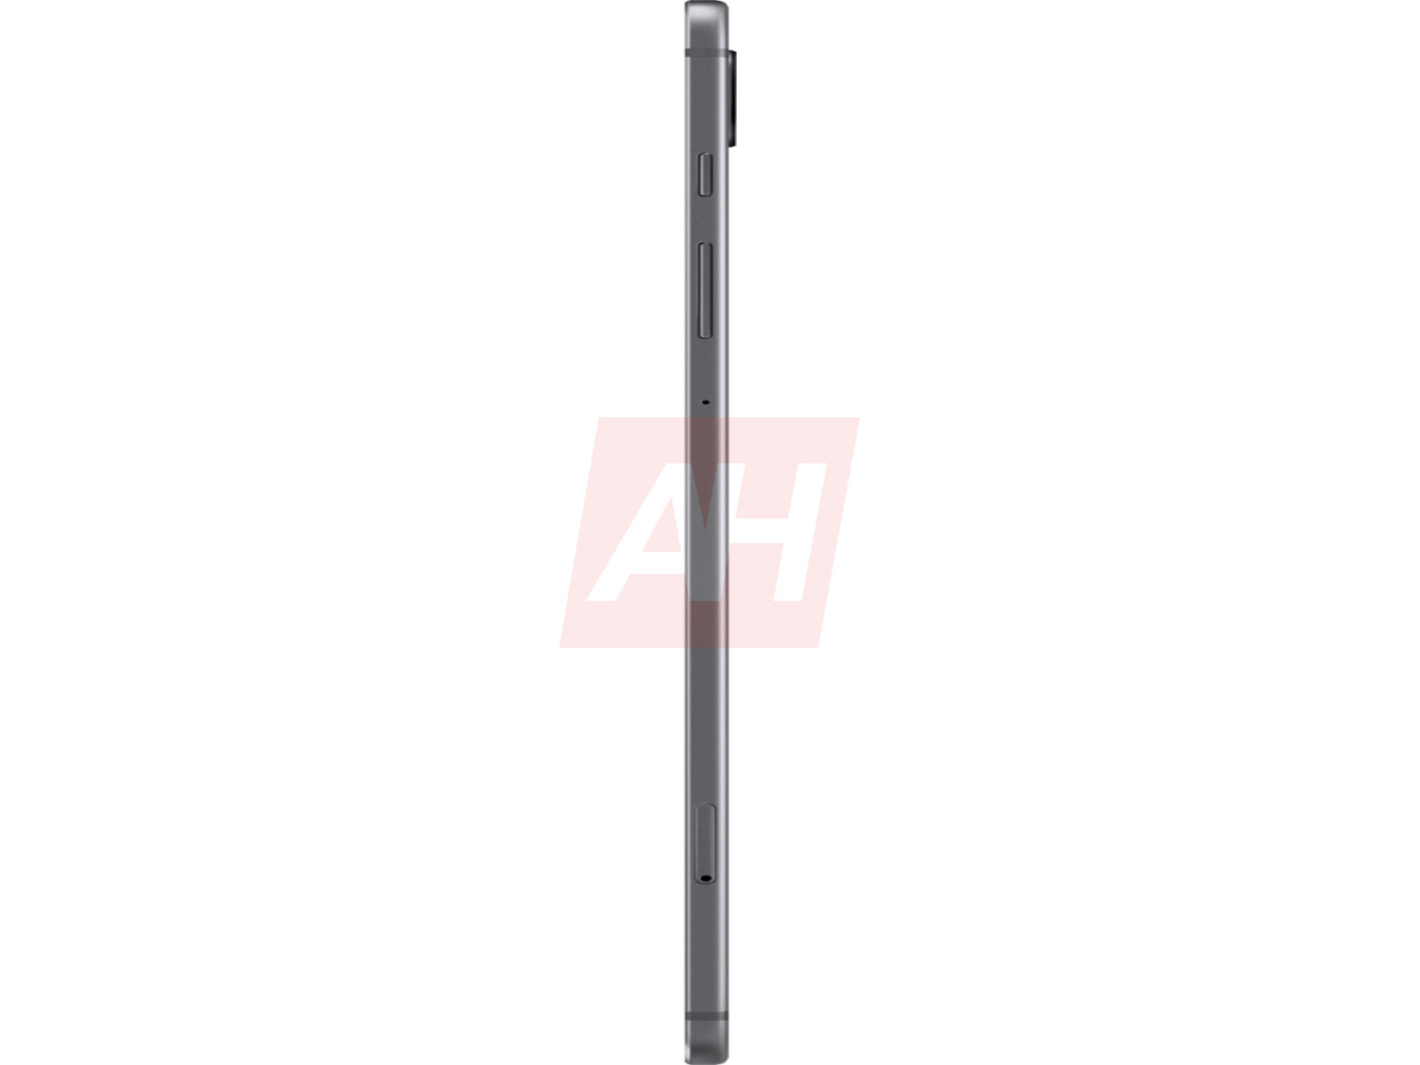 Samsung Galaxy Tab S6 Leak Grey 10